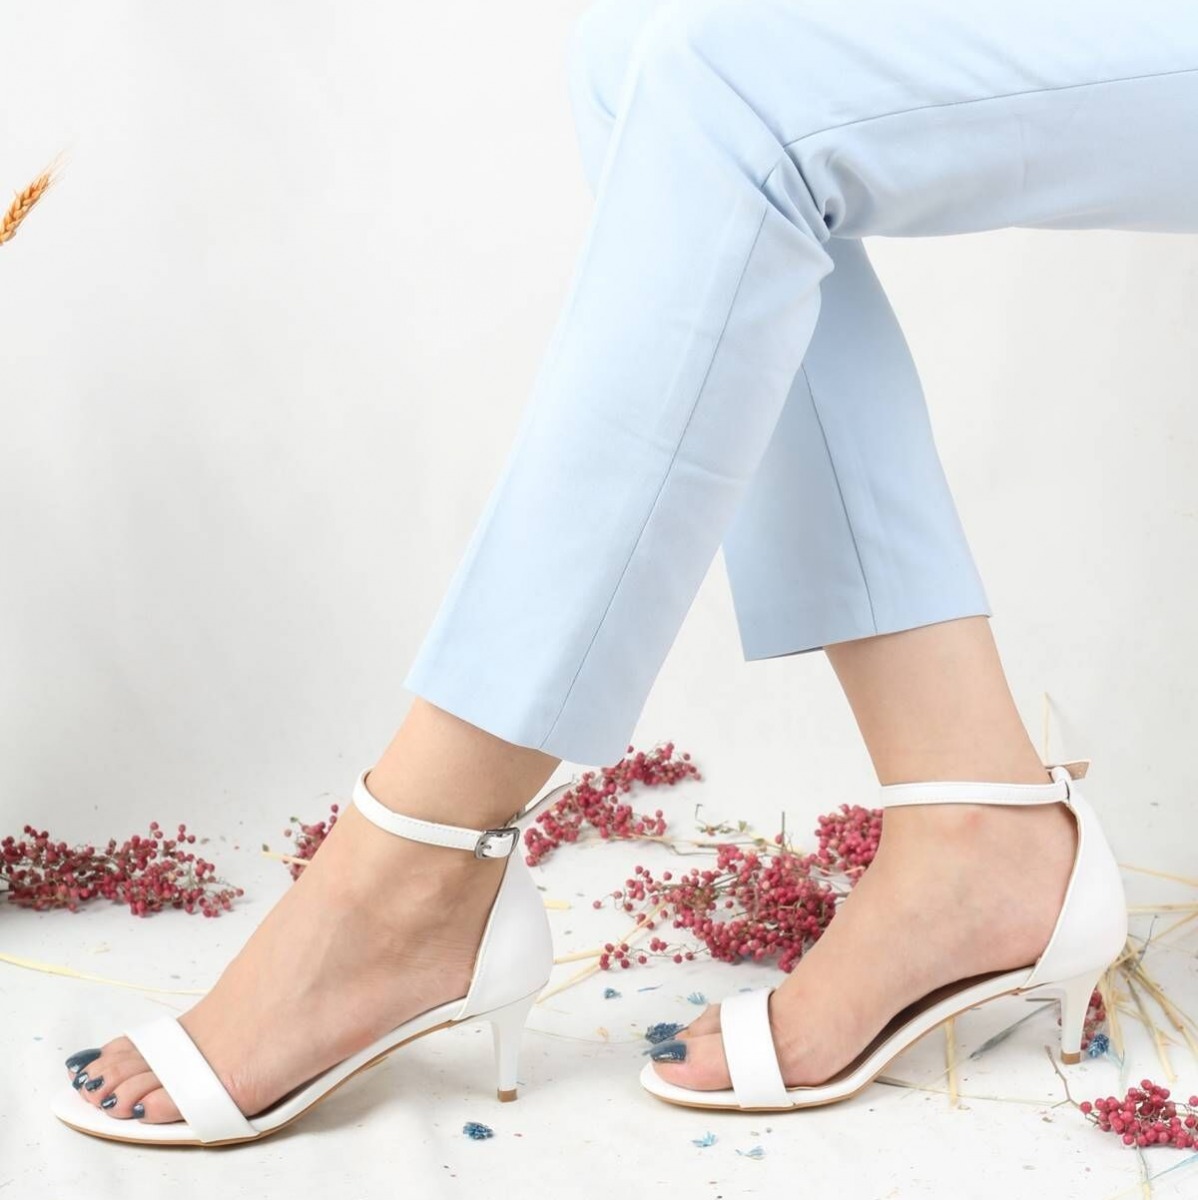 Flo Beyaz Mat Kısa Topuklu Tek Bant Kadın Ayakkabı - Aysa. 1